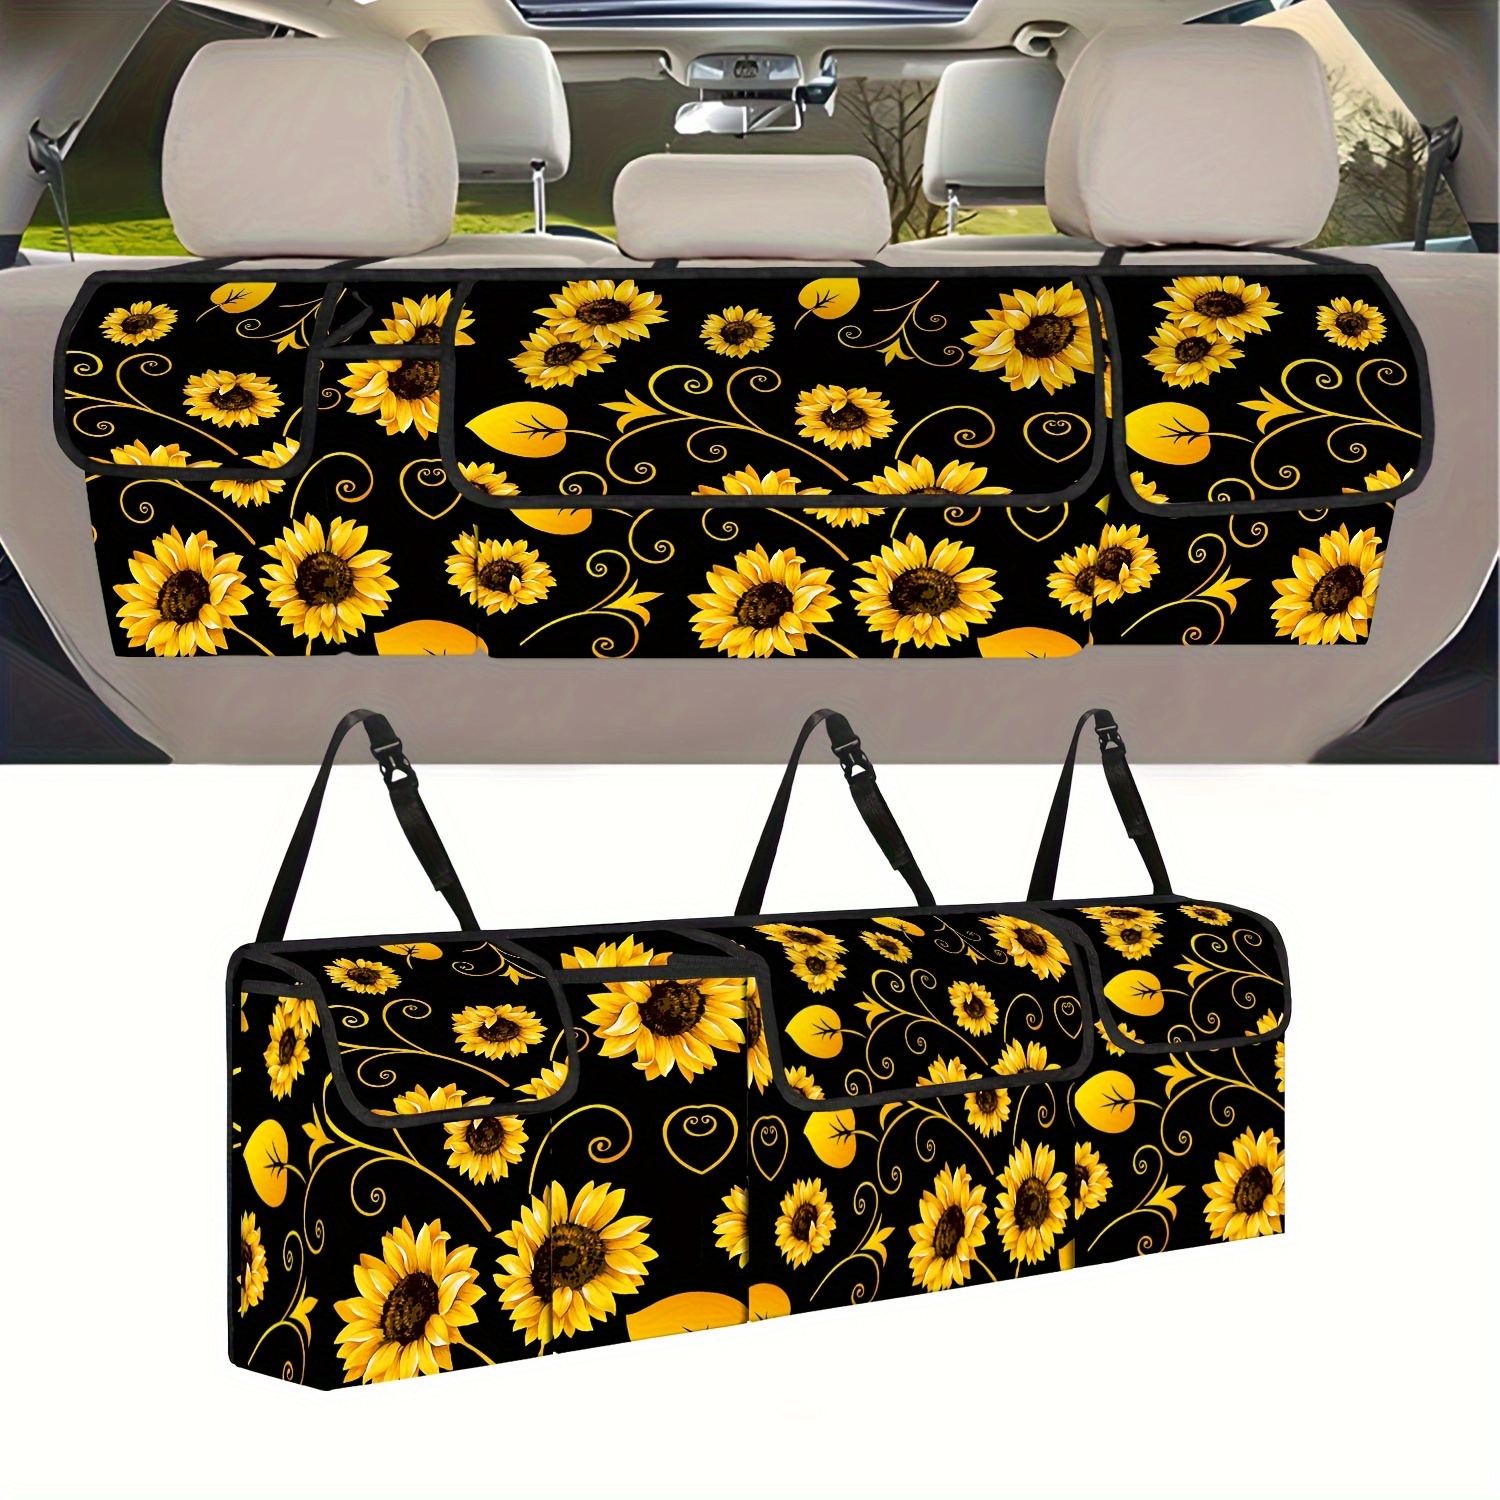 

1pc Sunflower Golden Leaf Printed Car Rear Seat Trunk Hanging Storage Bag, Foldable Storage Bag With 3 Large Pockets And 3 Adjustable Shoulder Straps